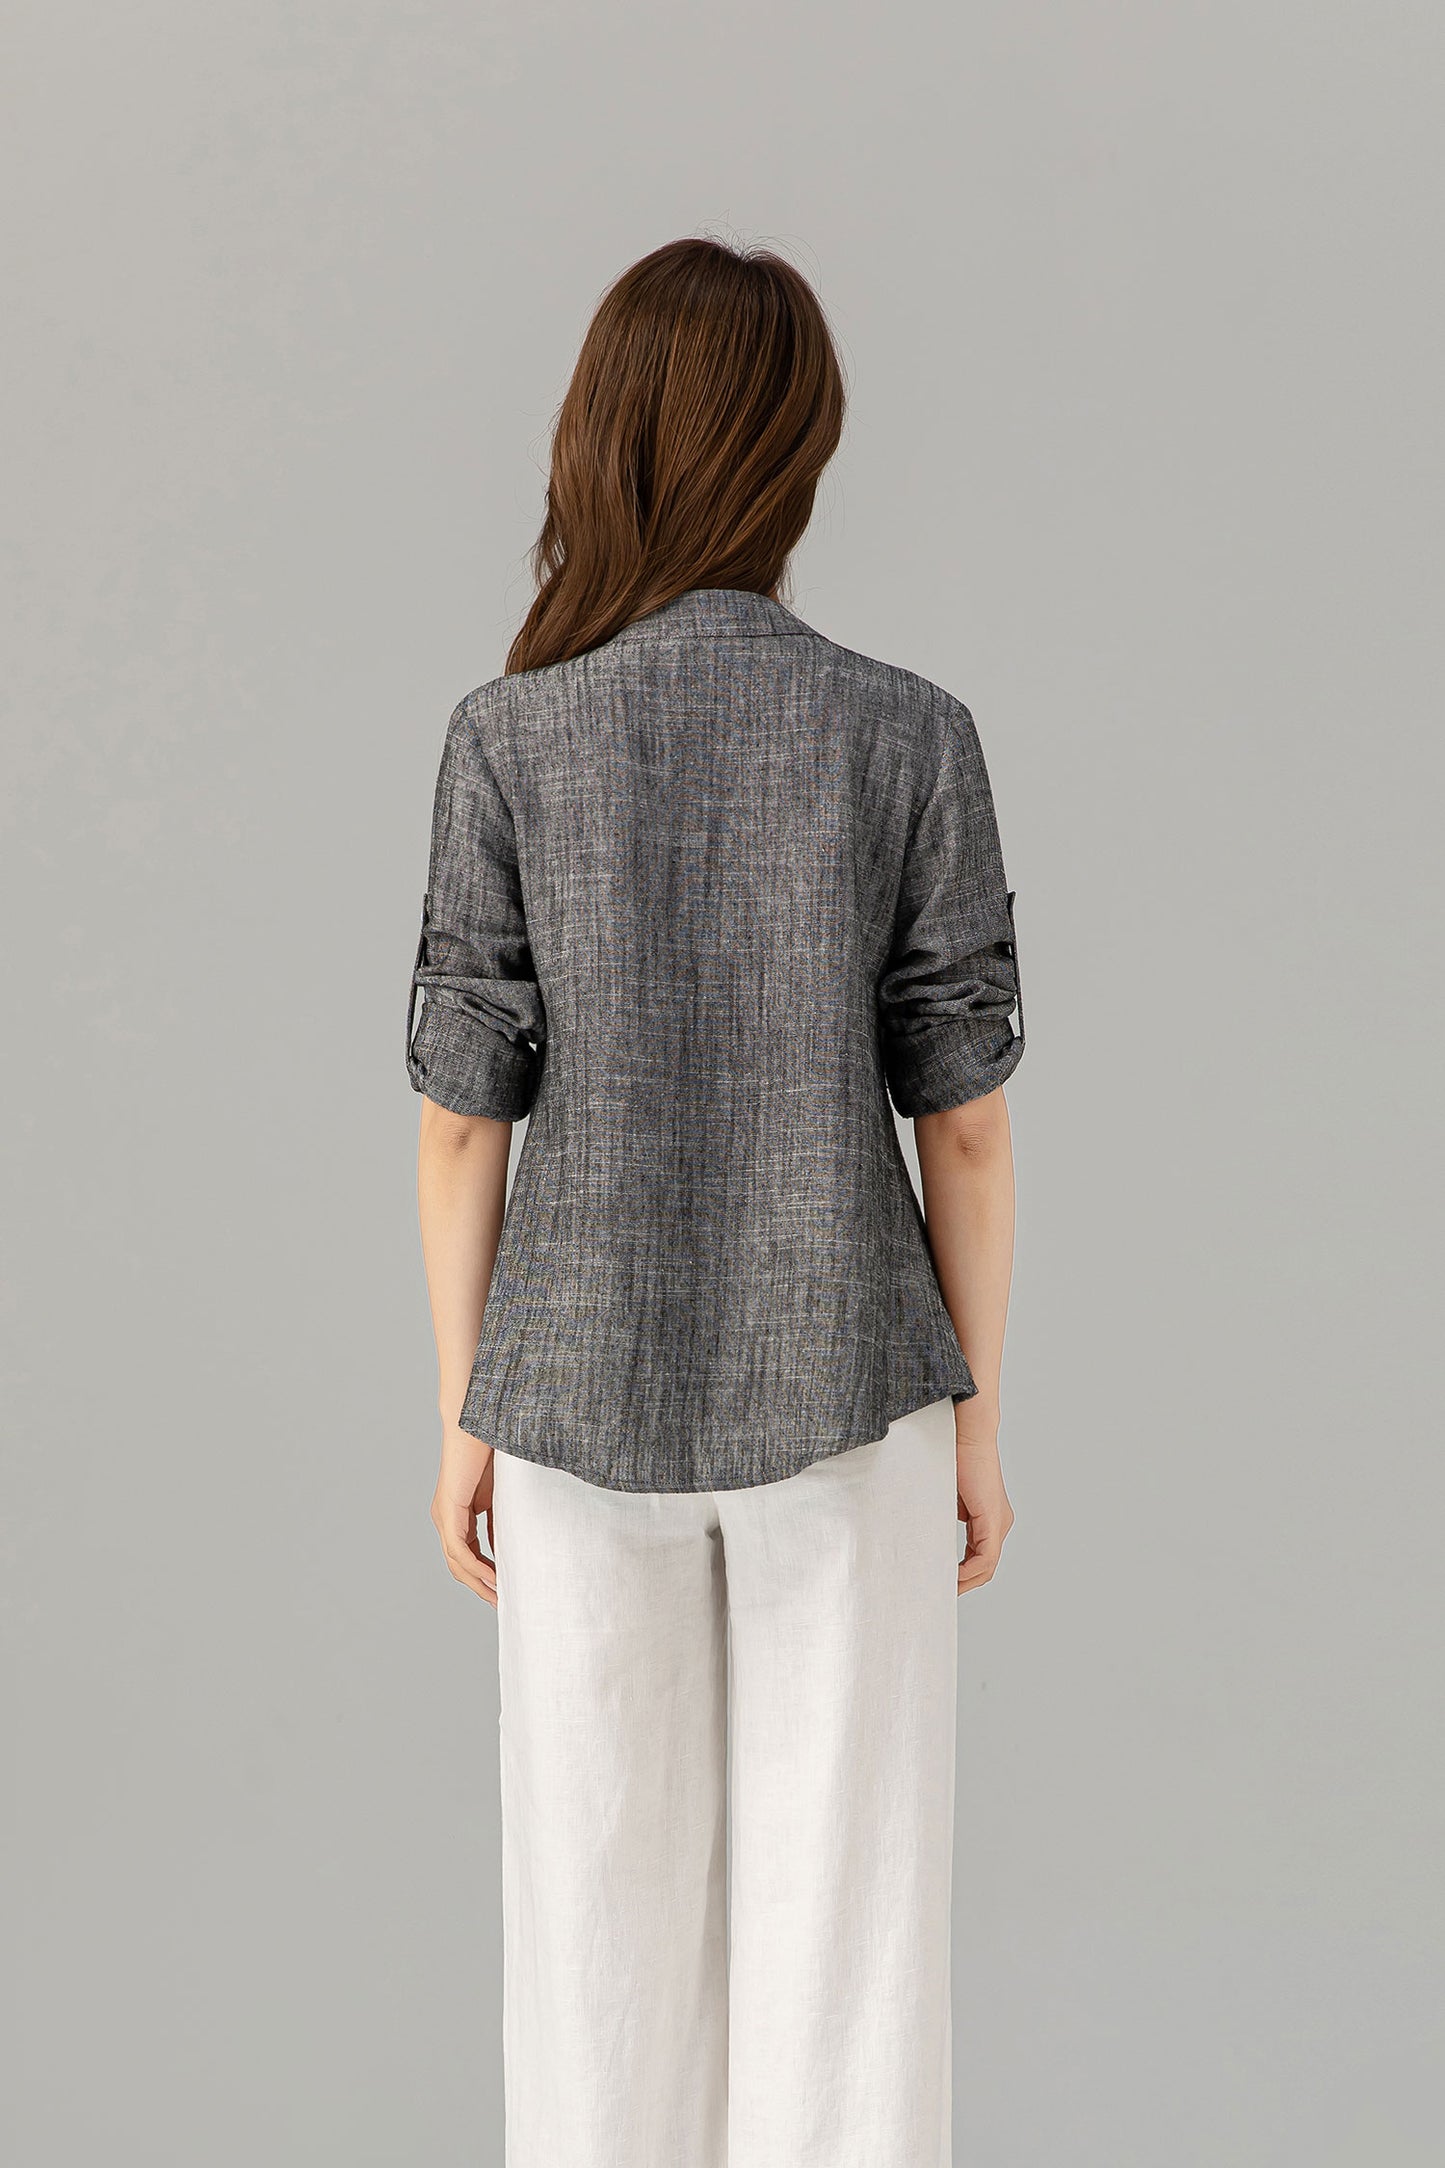 Long sleeves button down linen shirt top 4915